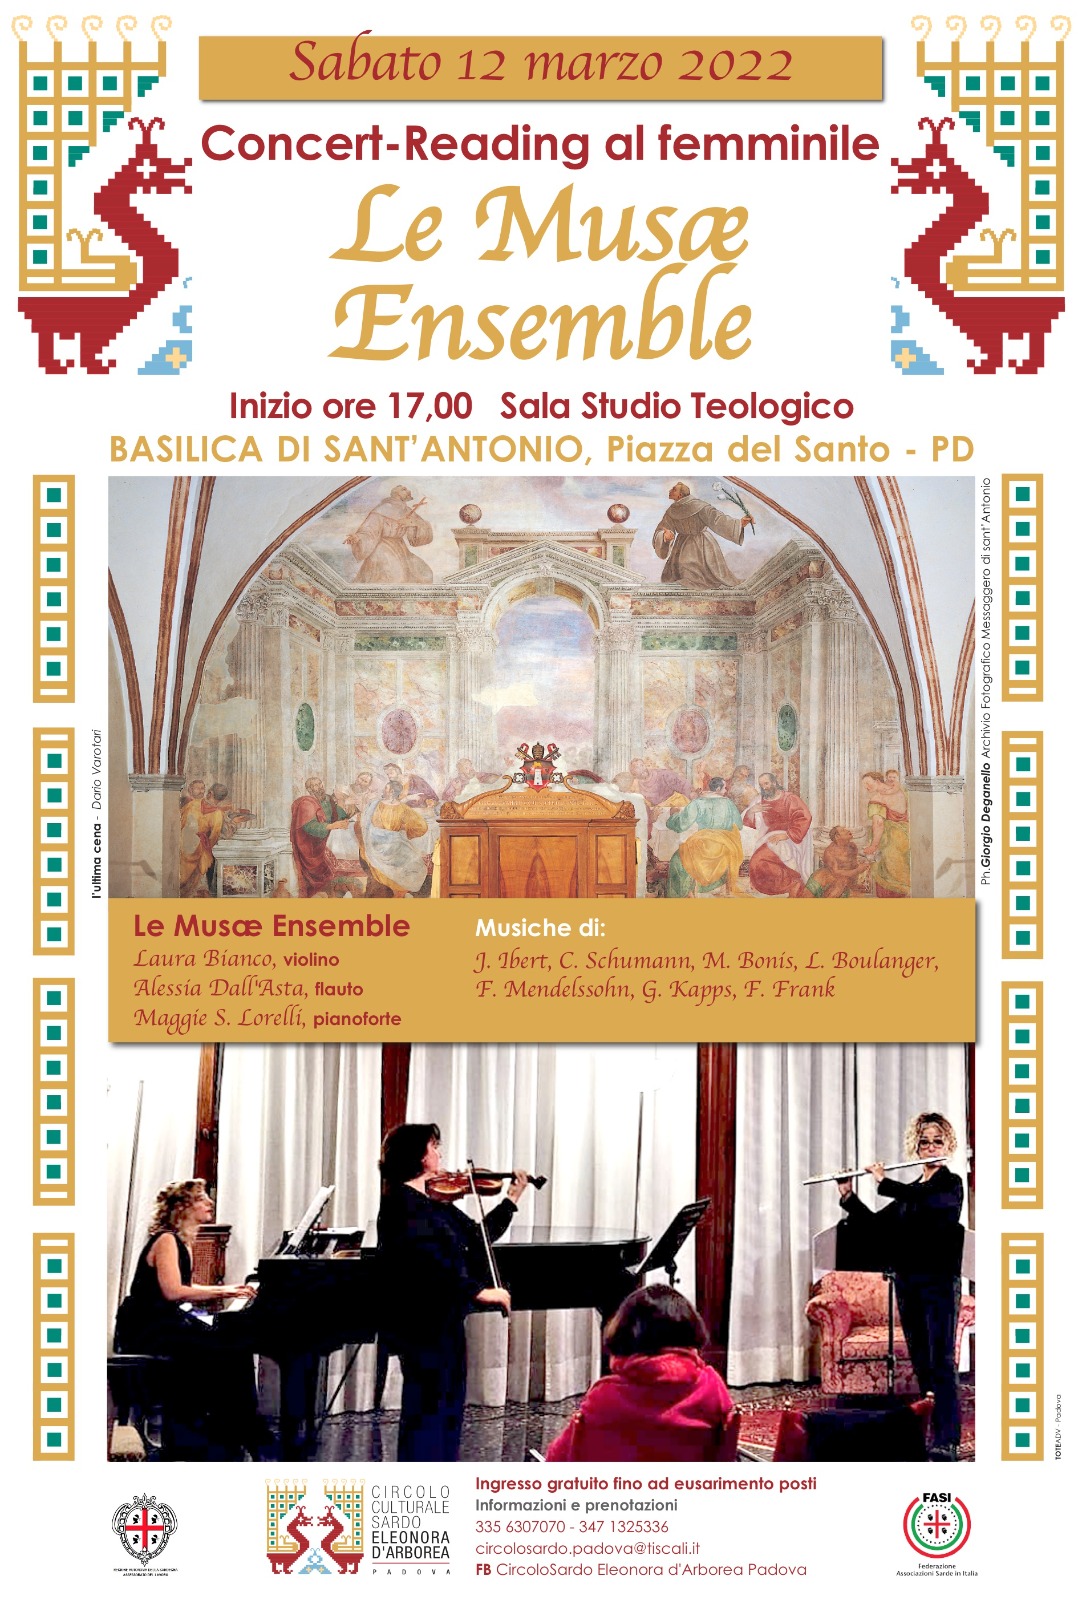 Ensemble Musae concert, Basilica di Sant'Antonio in Padua- Poster